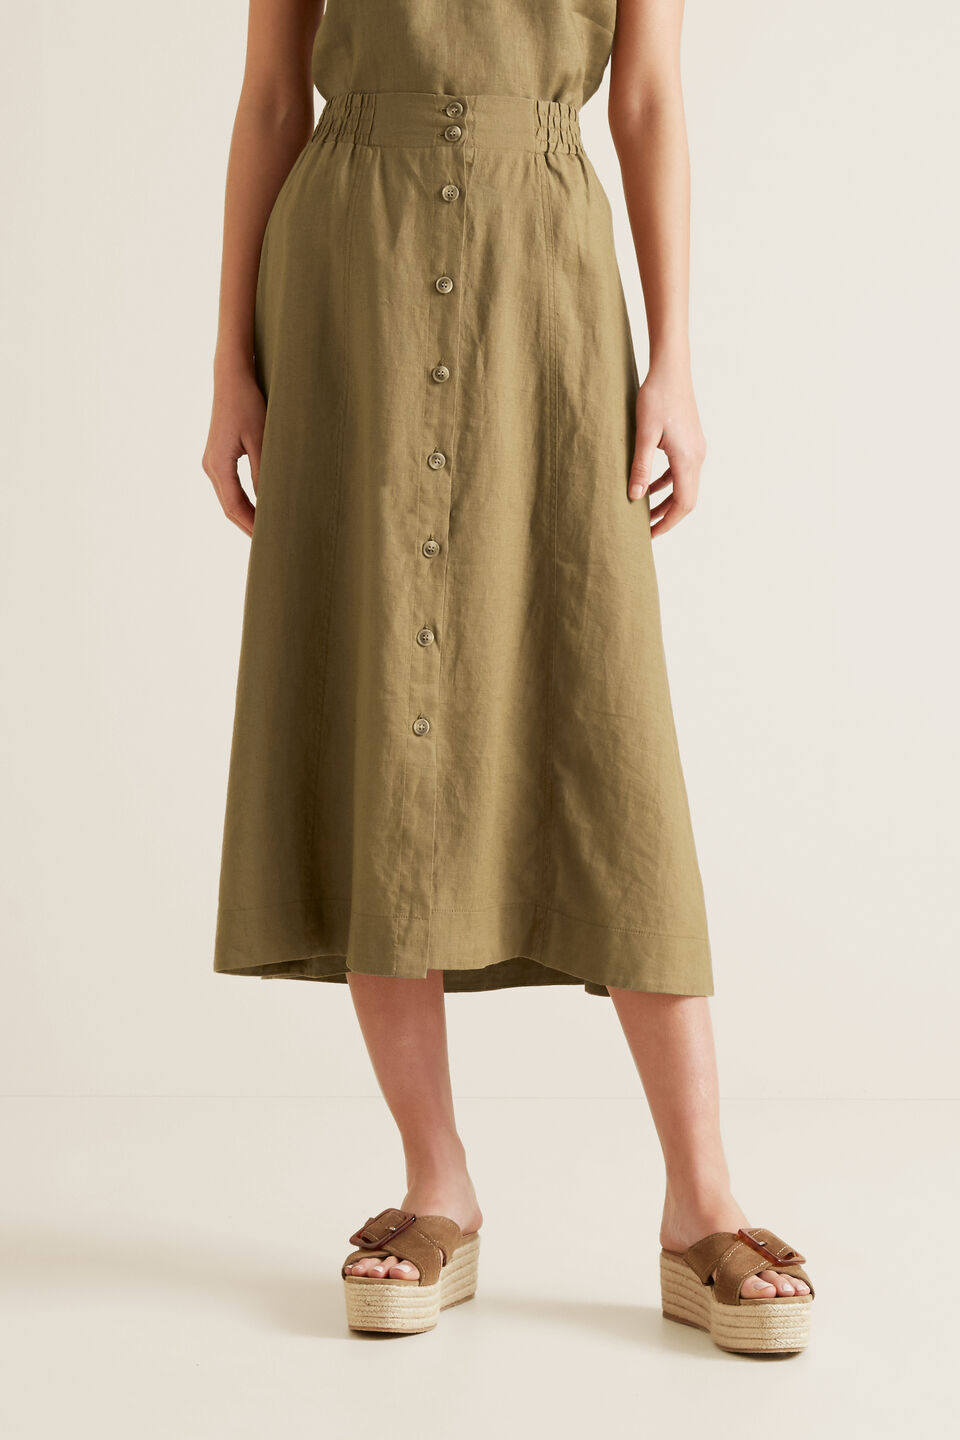 Linen Flowing Skirt  